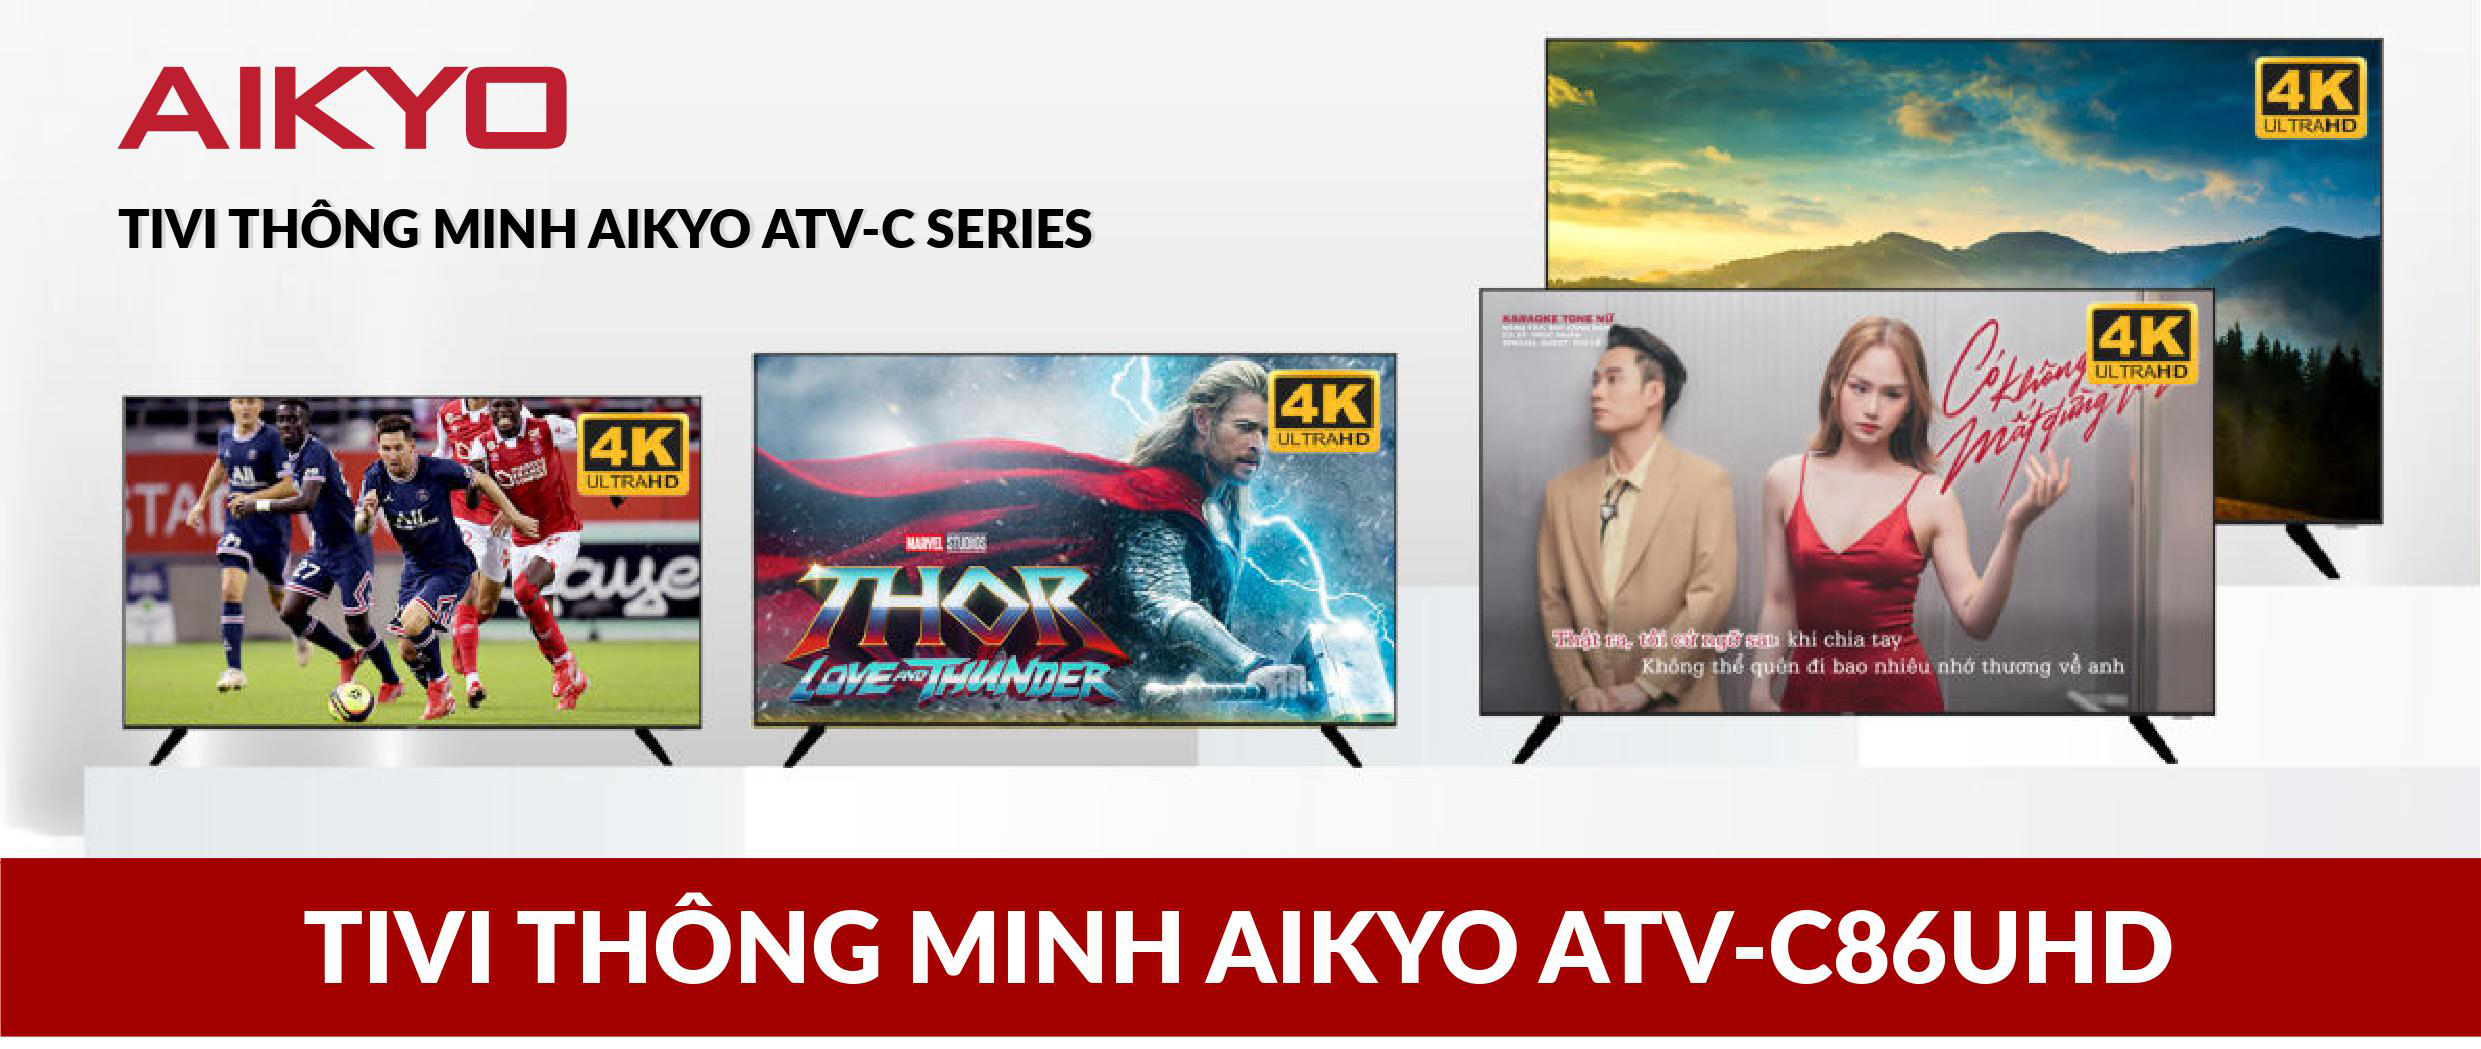 Tivi Thông Minh Aikyo ATV – C86UHD